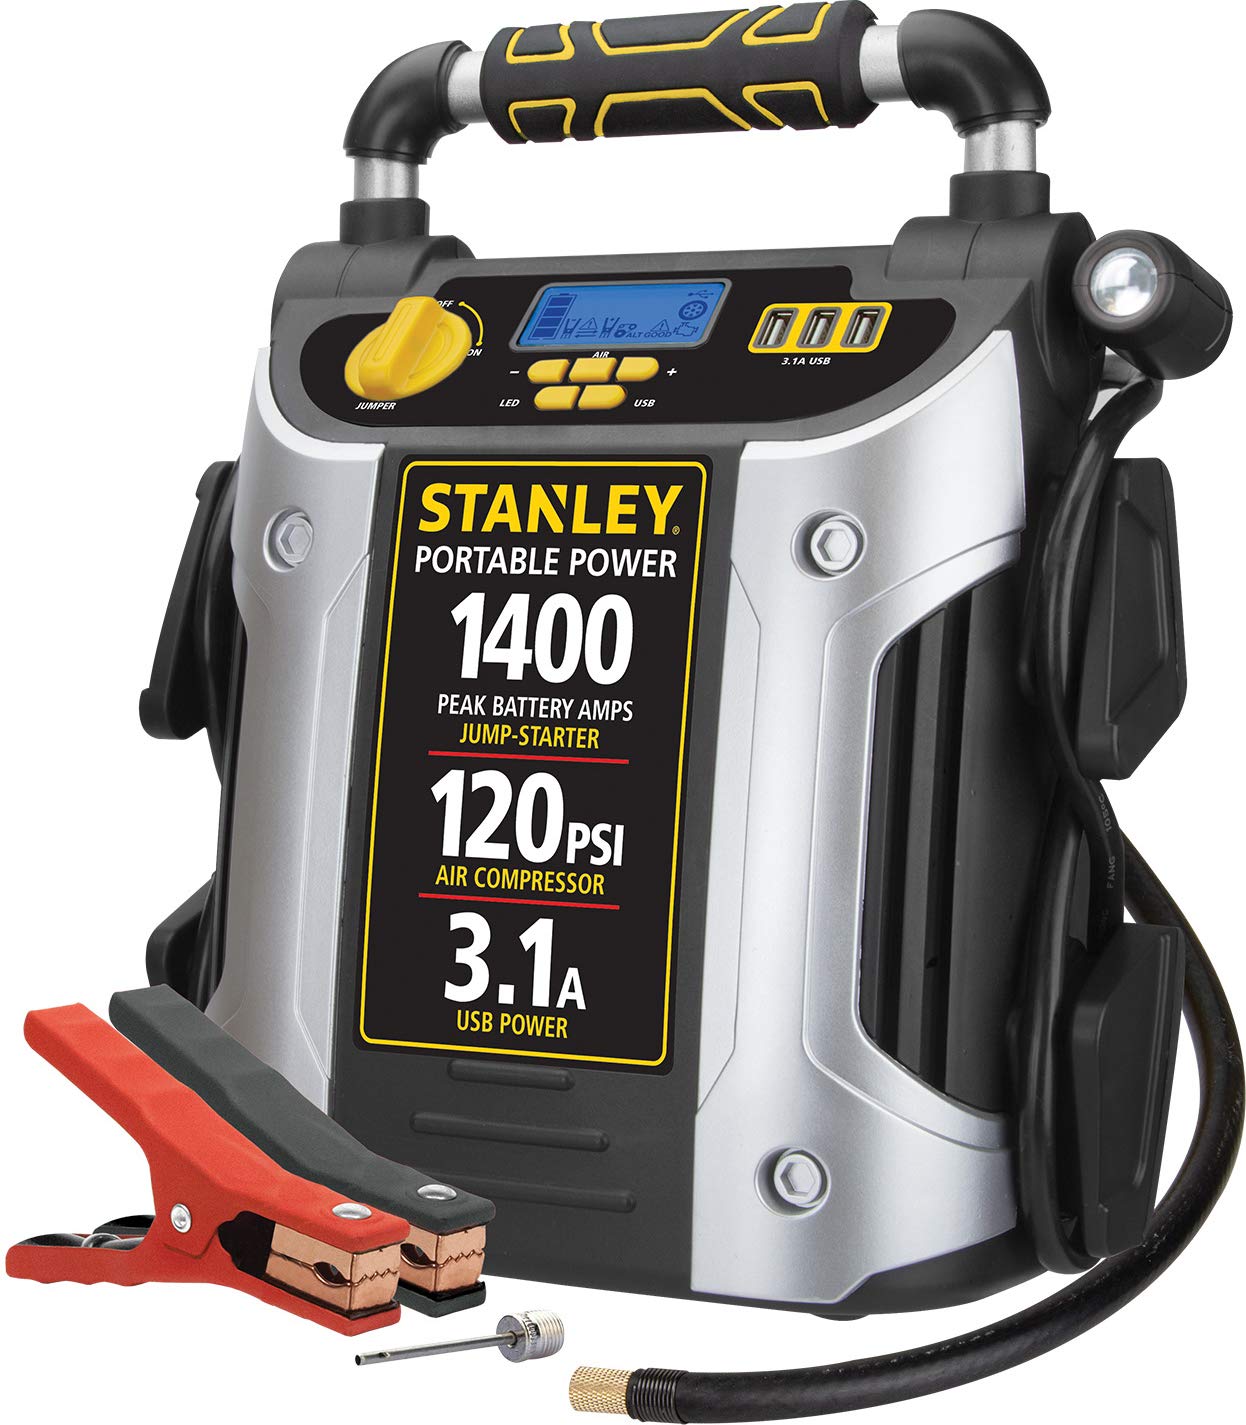 Stanley 1400 ピークアンプ自動車用ジャンプスターター、ポータブルパワートリプル 15W USB ポート、120 PSI エアコンプレッサー